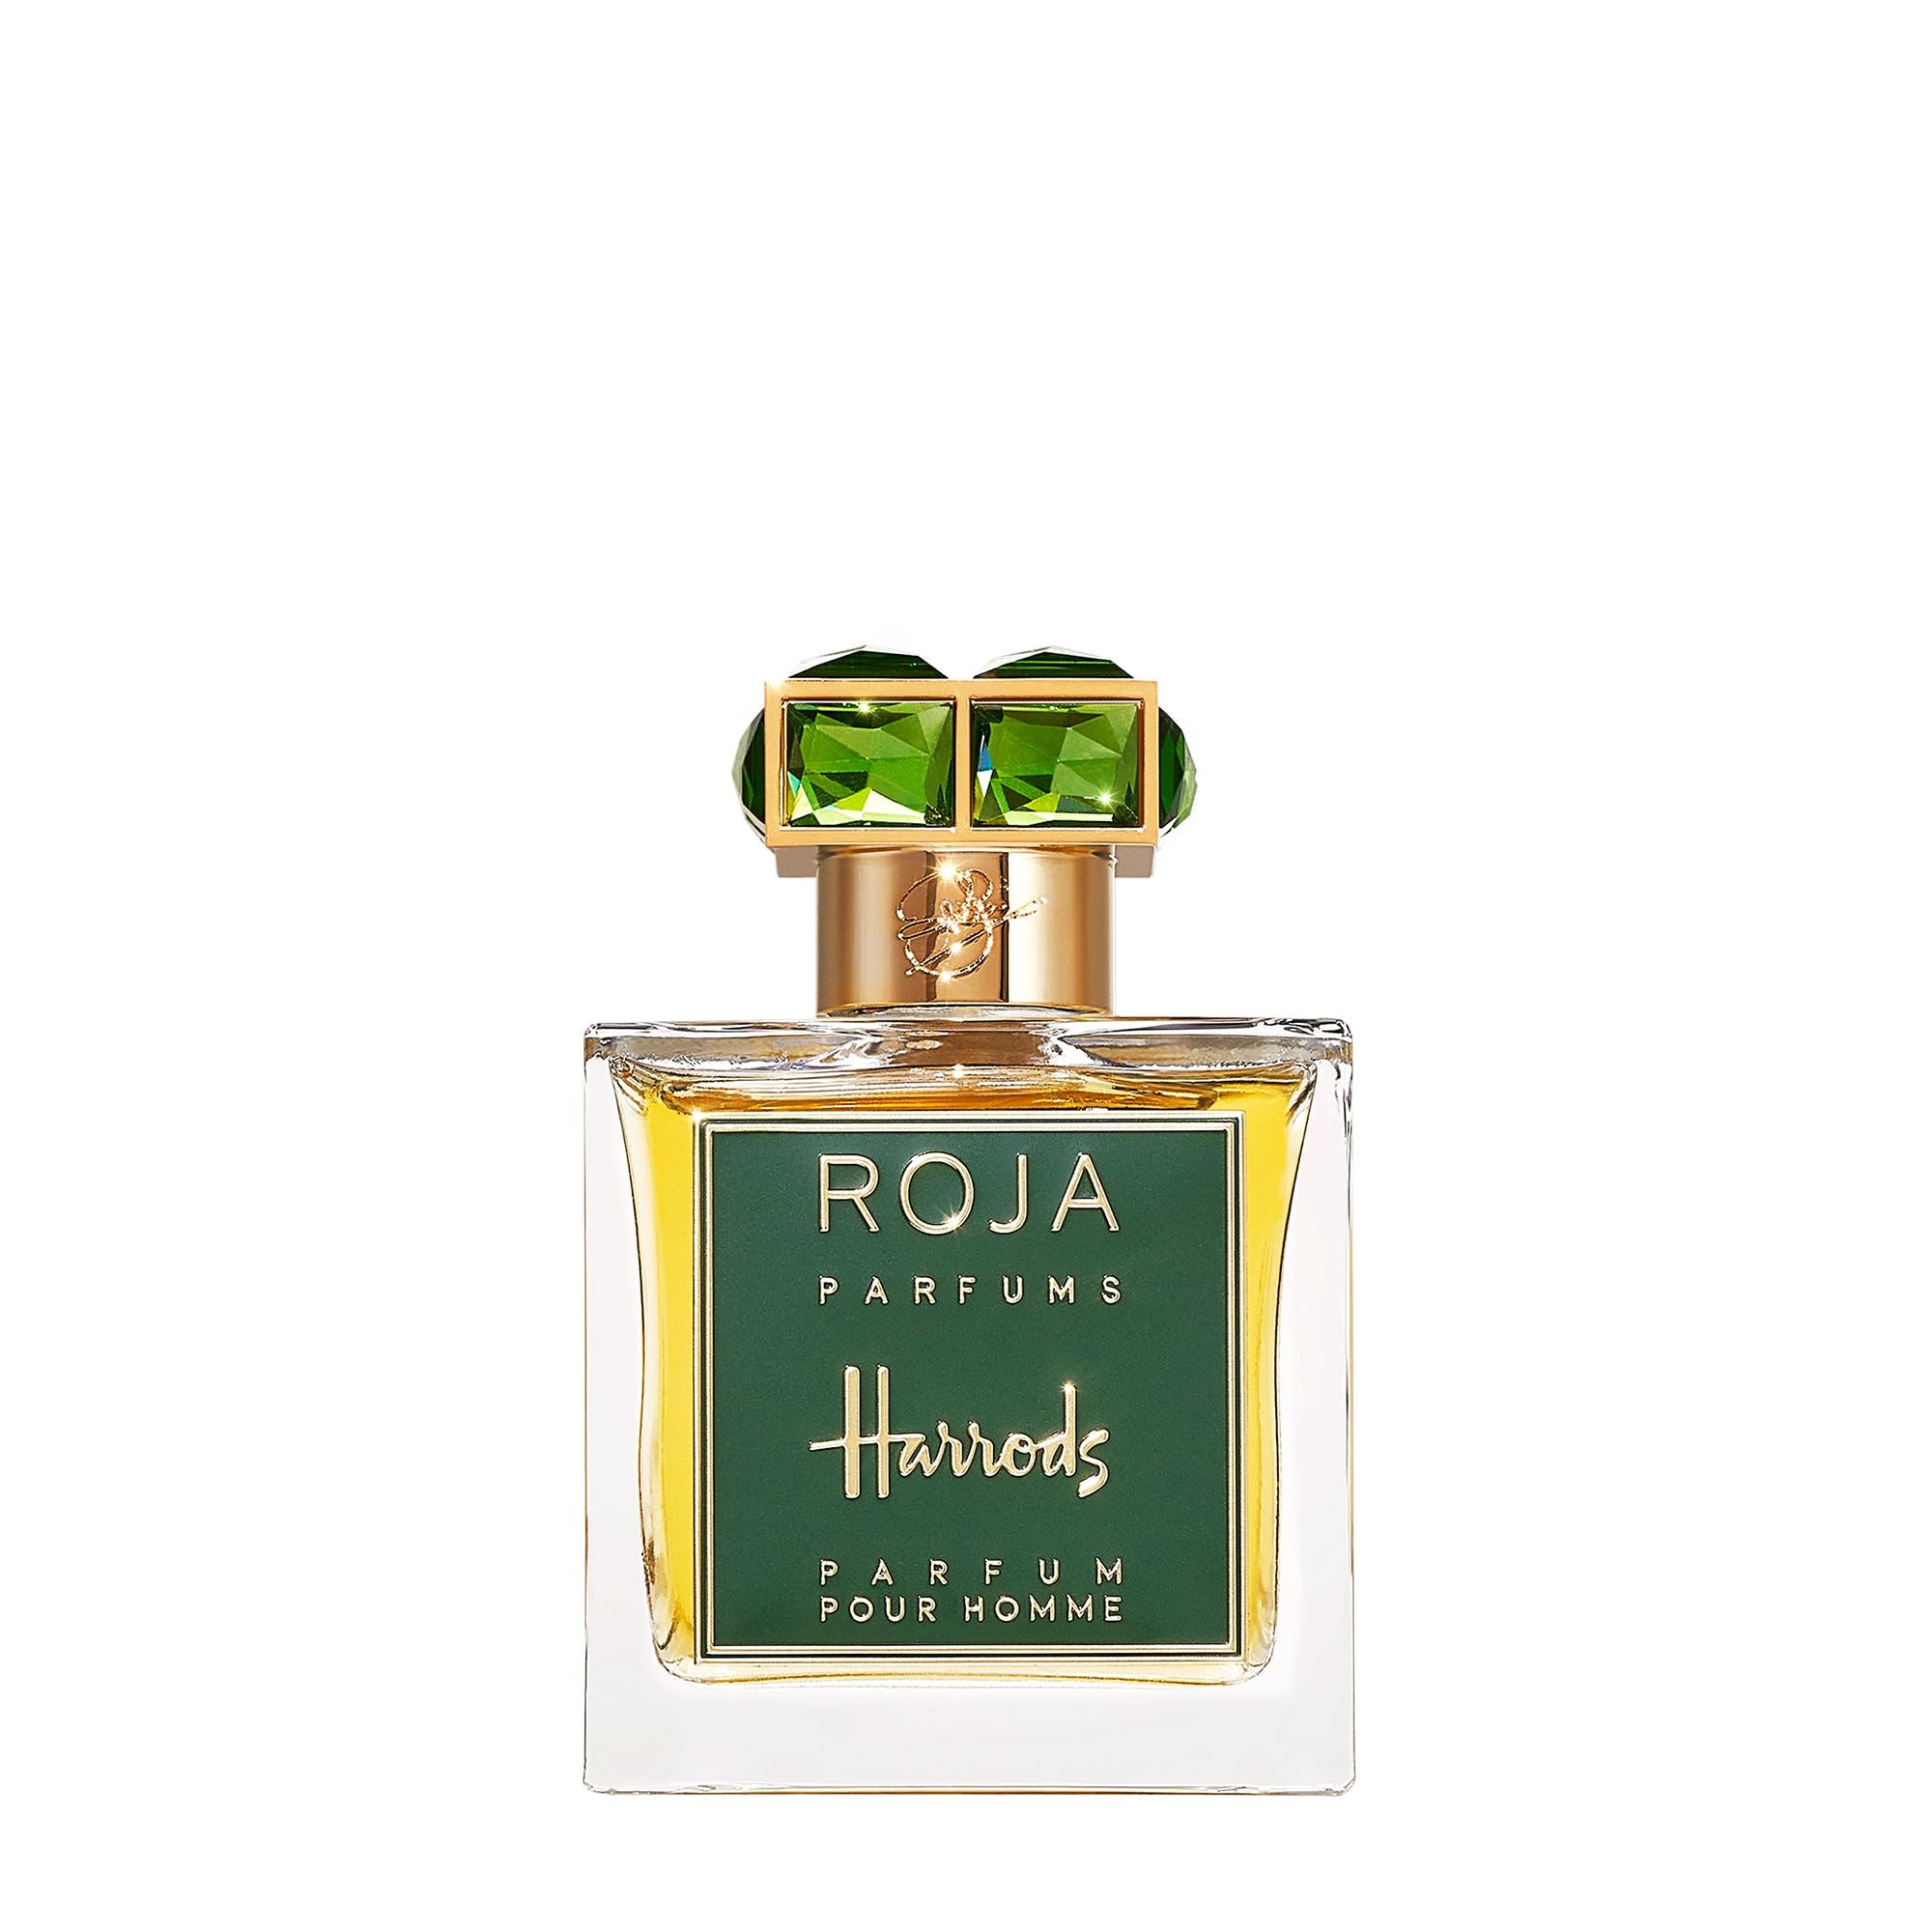 Roja Parfums  Harrods Exclusive Parfum Pour Homme - 100ml